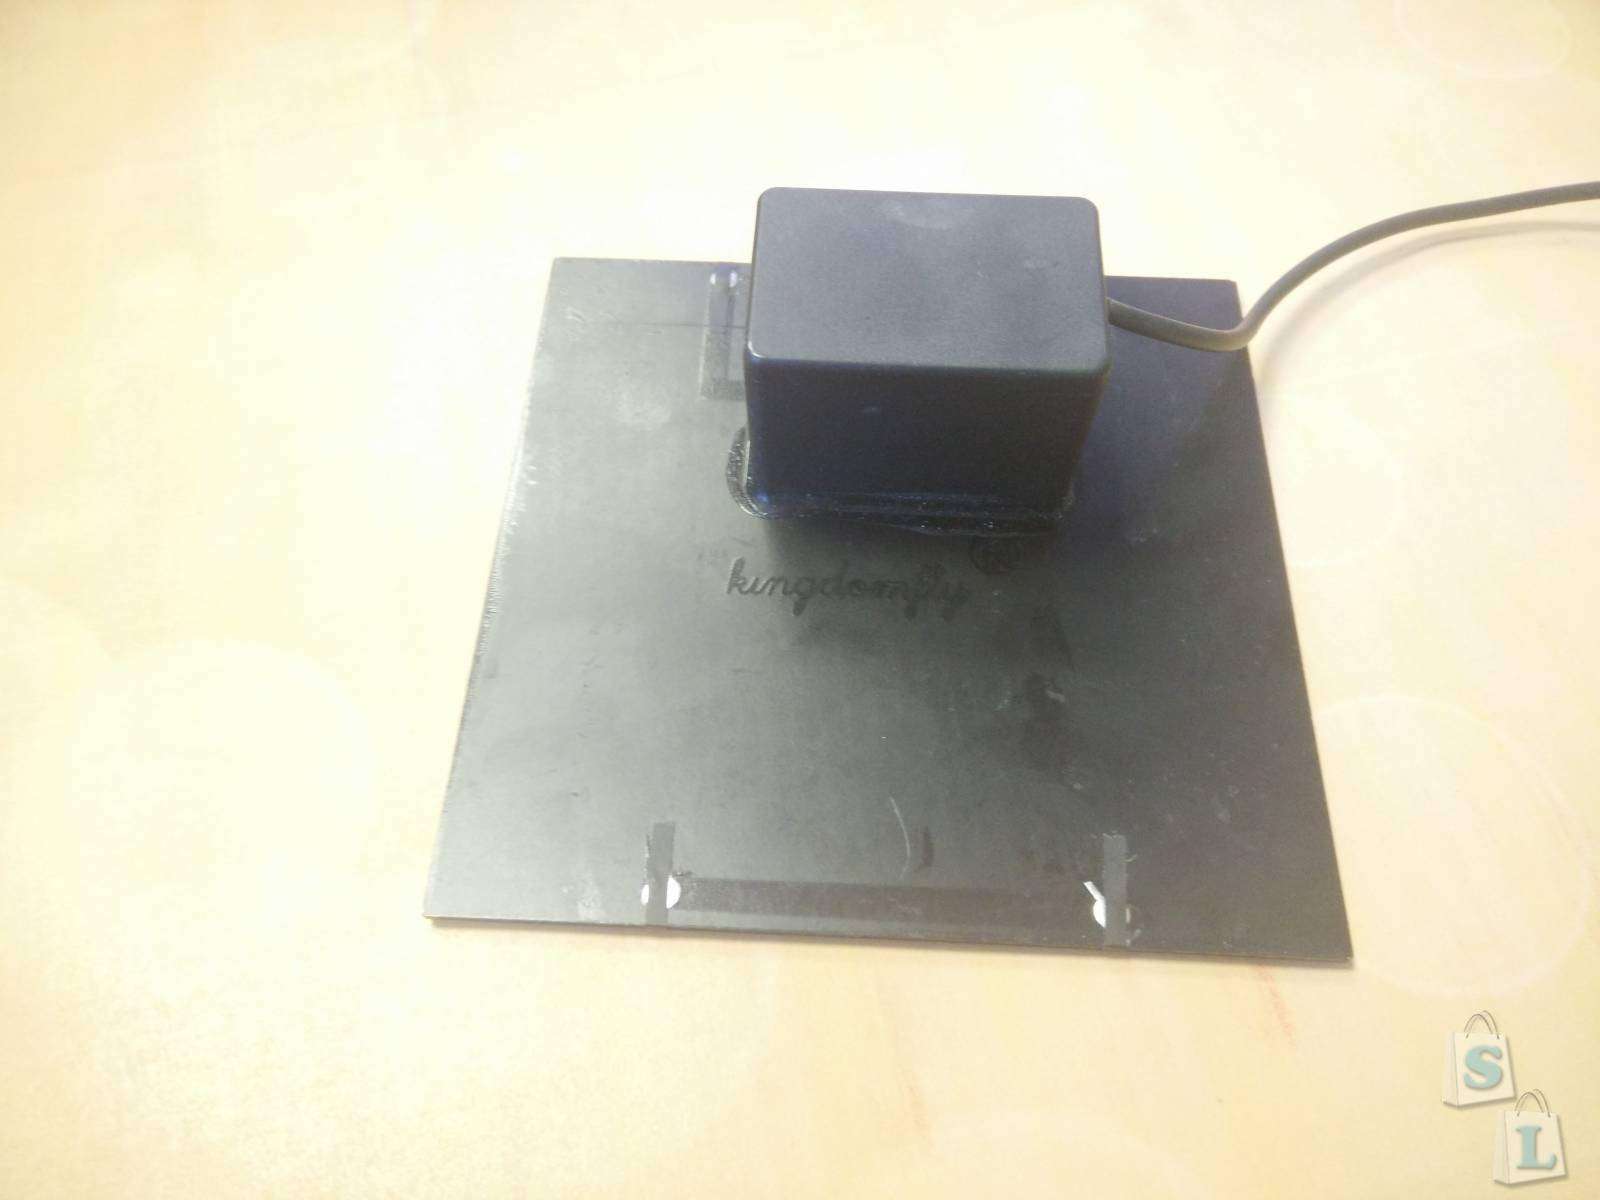 TinyDeal: Фонтанчик работающий от солнечной батарее который достался почти бесплатно